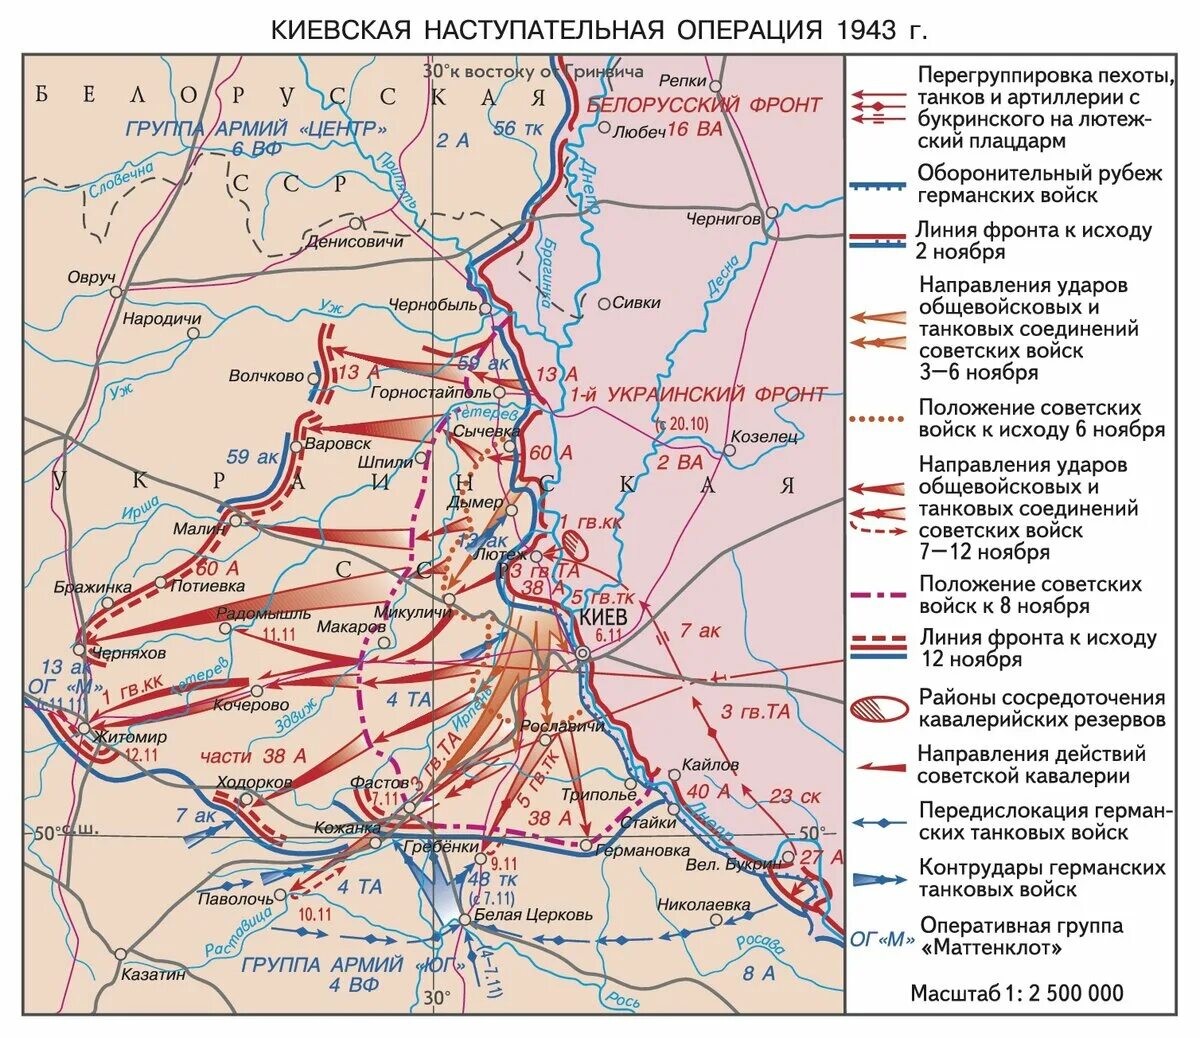 Киевская стратегическая наступательная операция 3-13 ноября 1943 г.. Киевская оборонительная операция 1943. Киевская оборонительная операция 13 ноября 23 декабря 1943. Киевская оборонительная операция 1941 года.